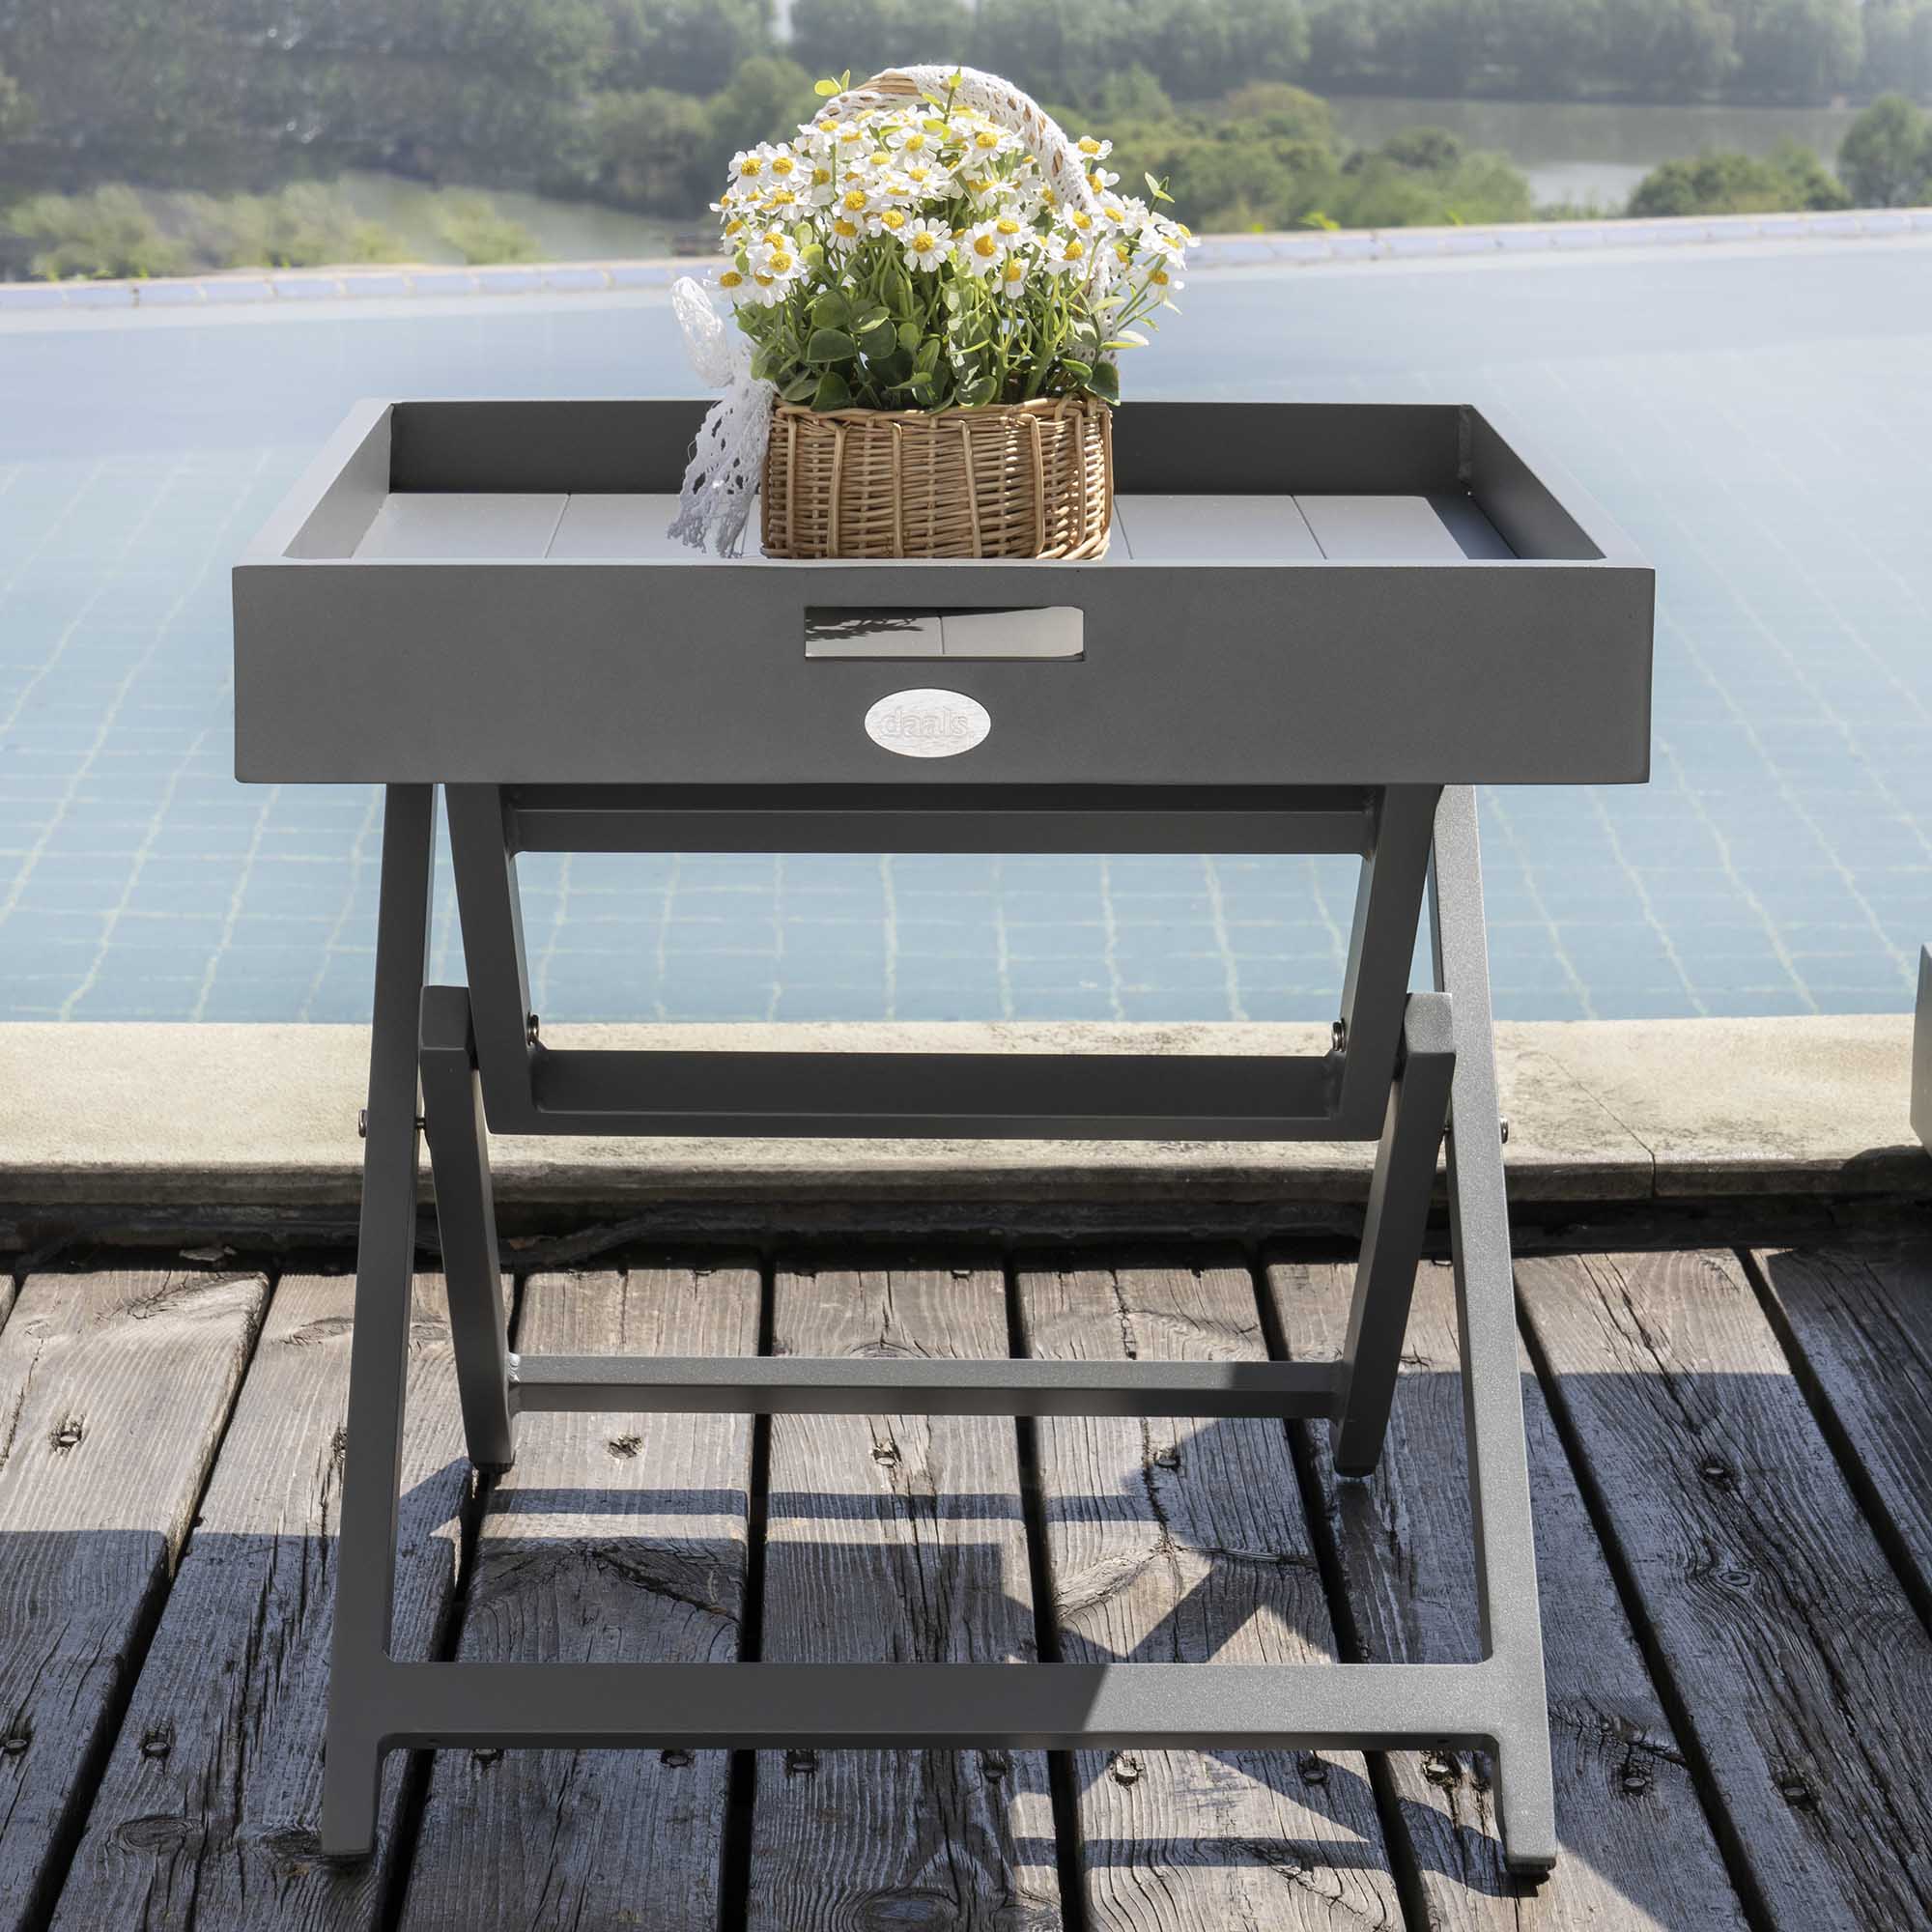 Pedra Aluminium Outdoor Side Tray Table, Grey